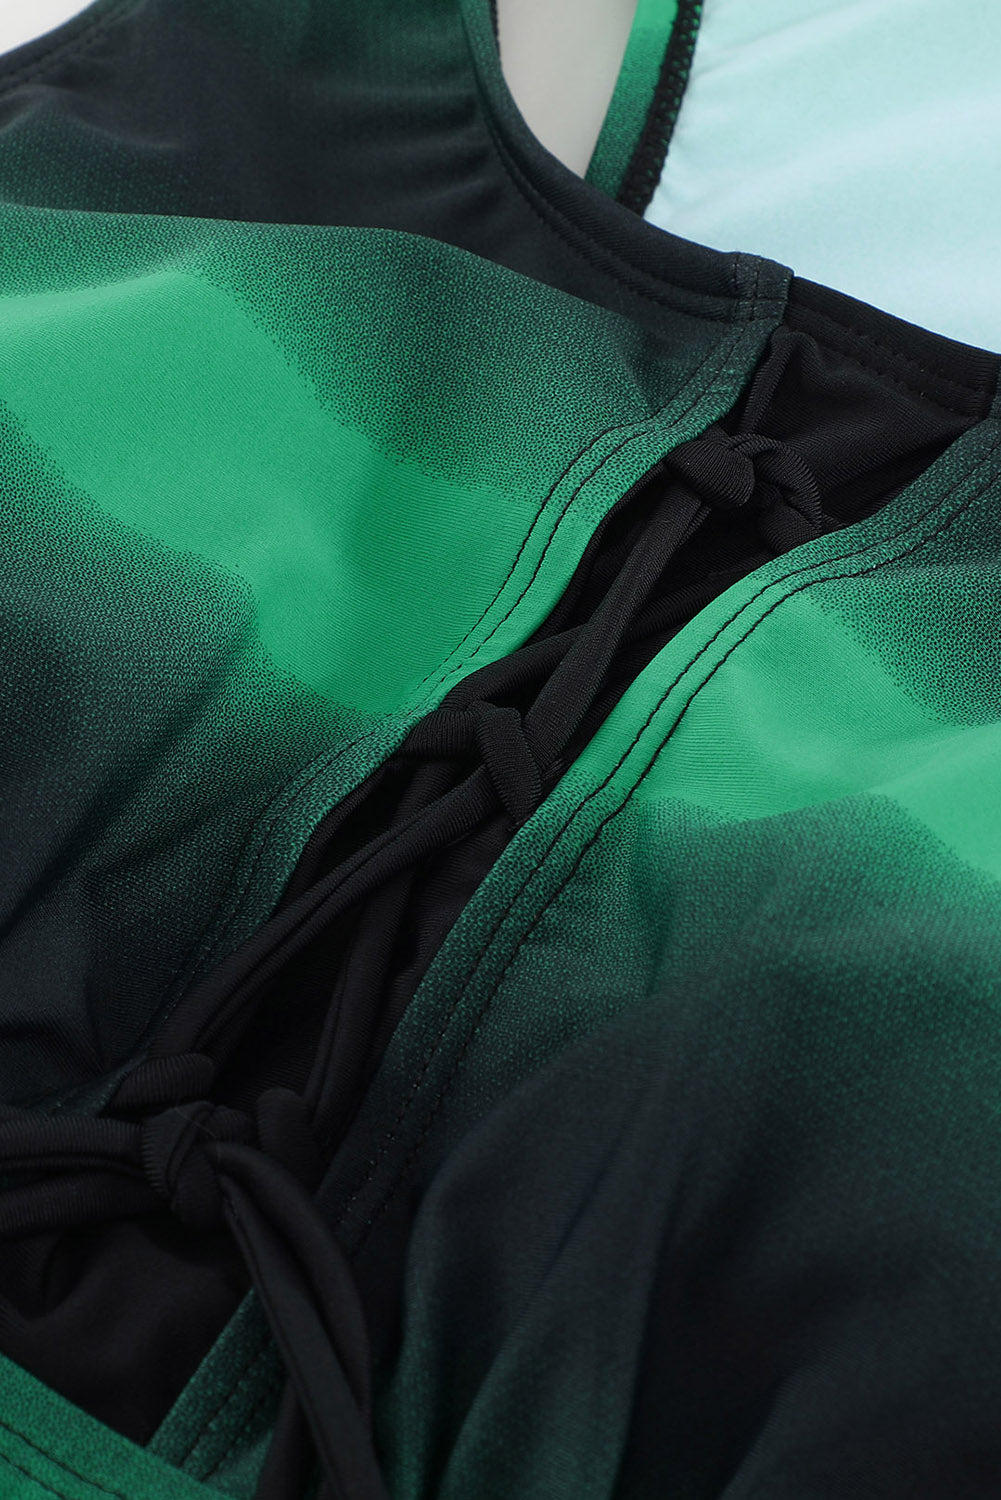 Green Black Ombre Print Racerback Tankini Swimsuit